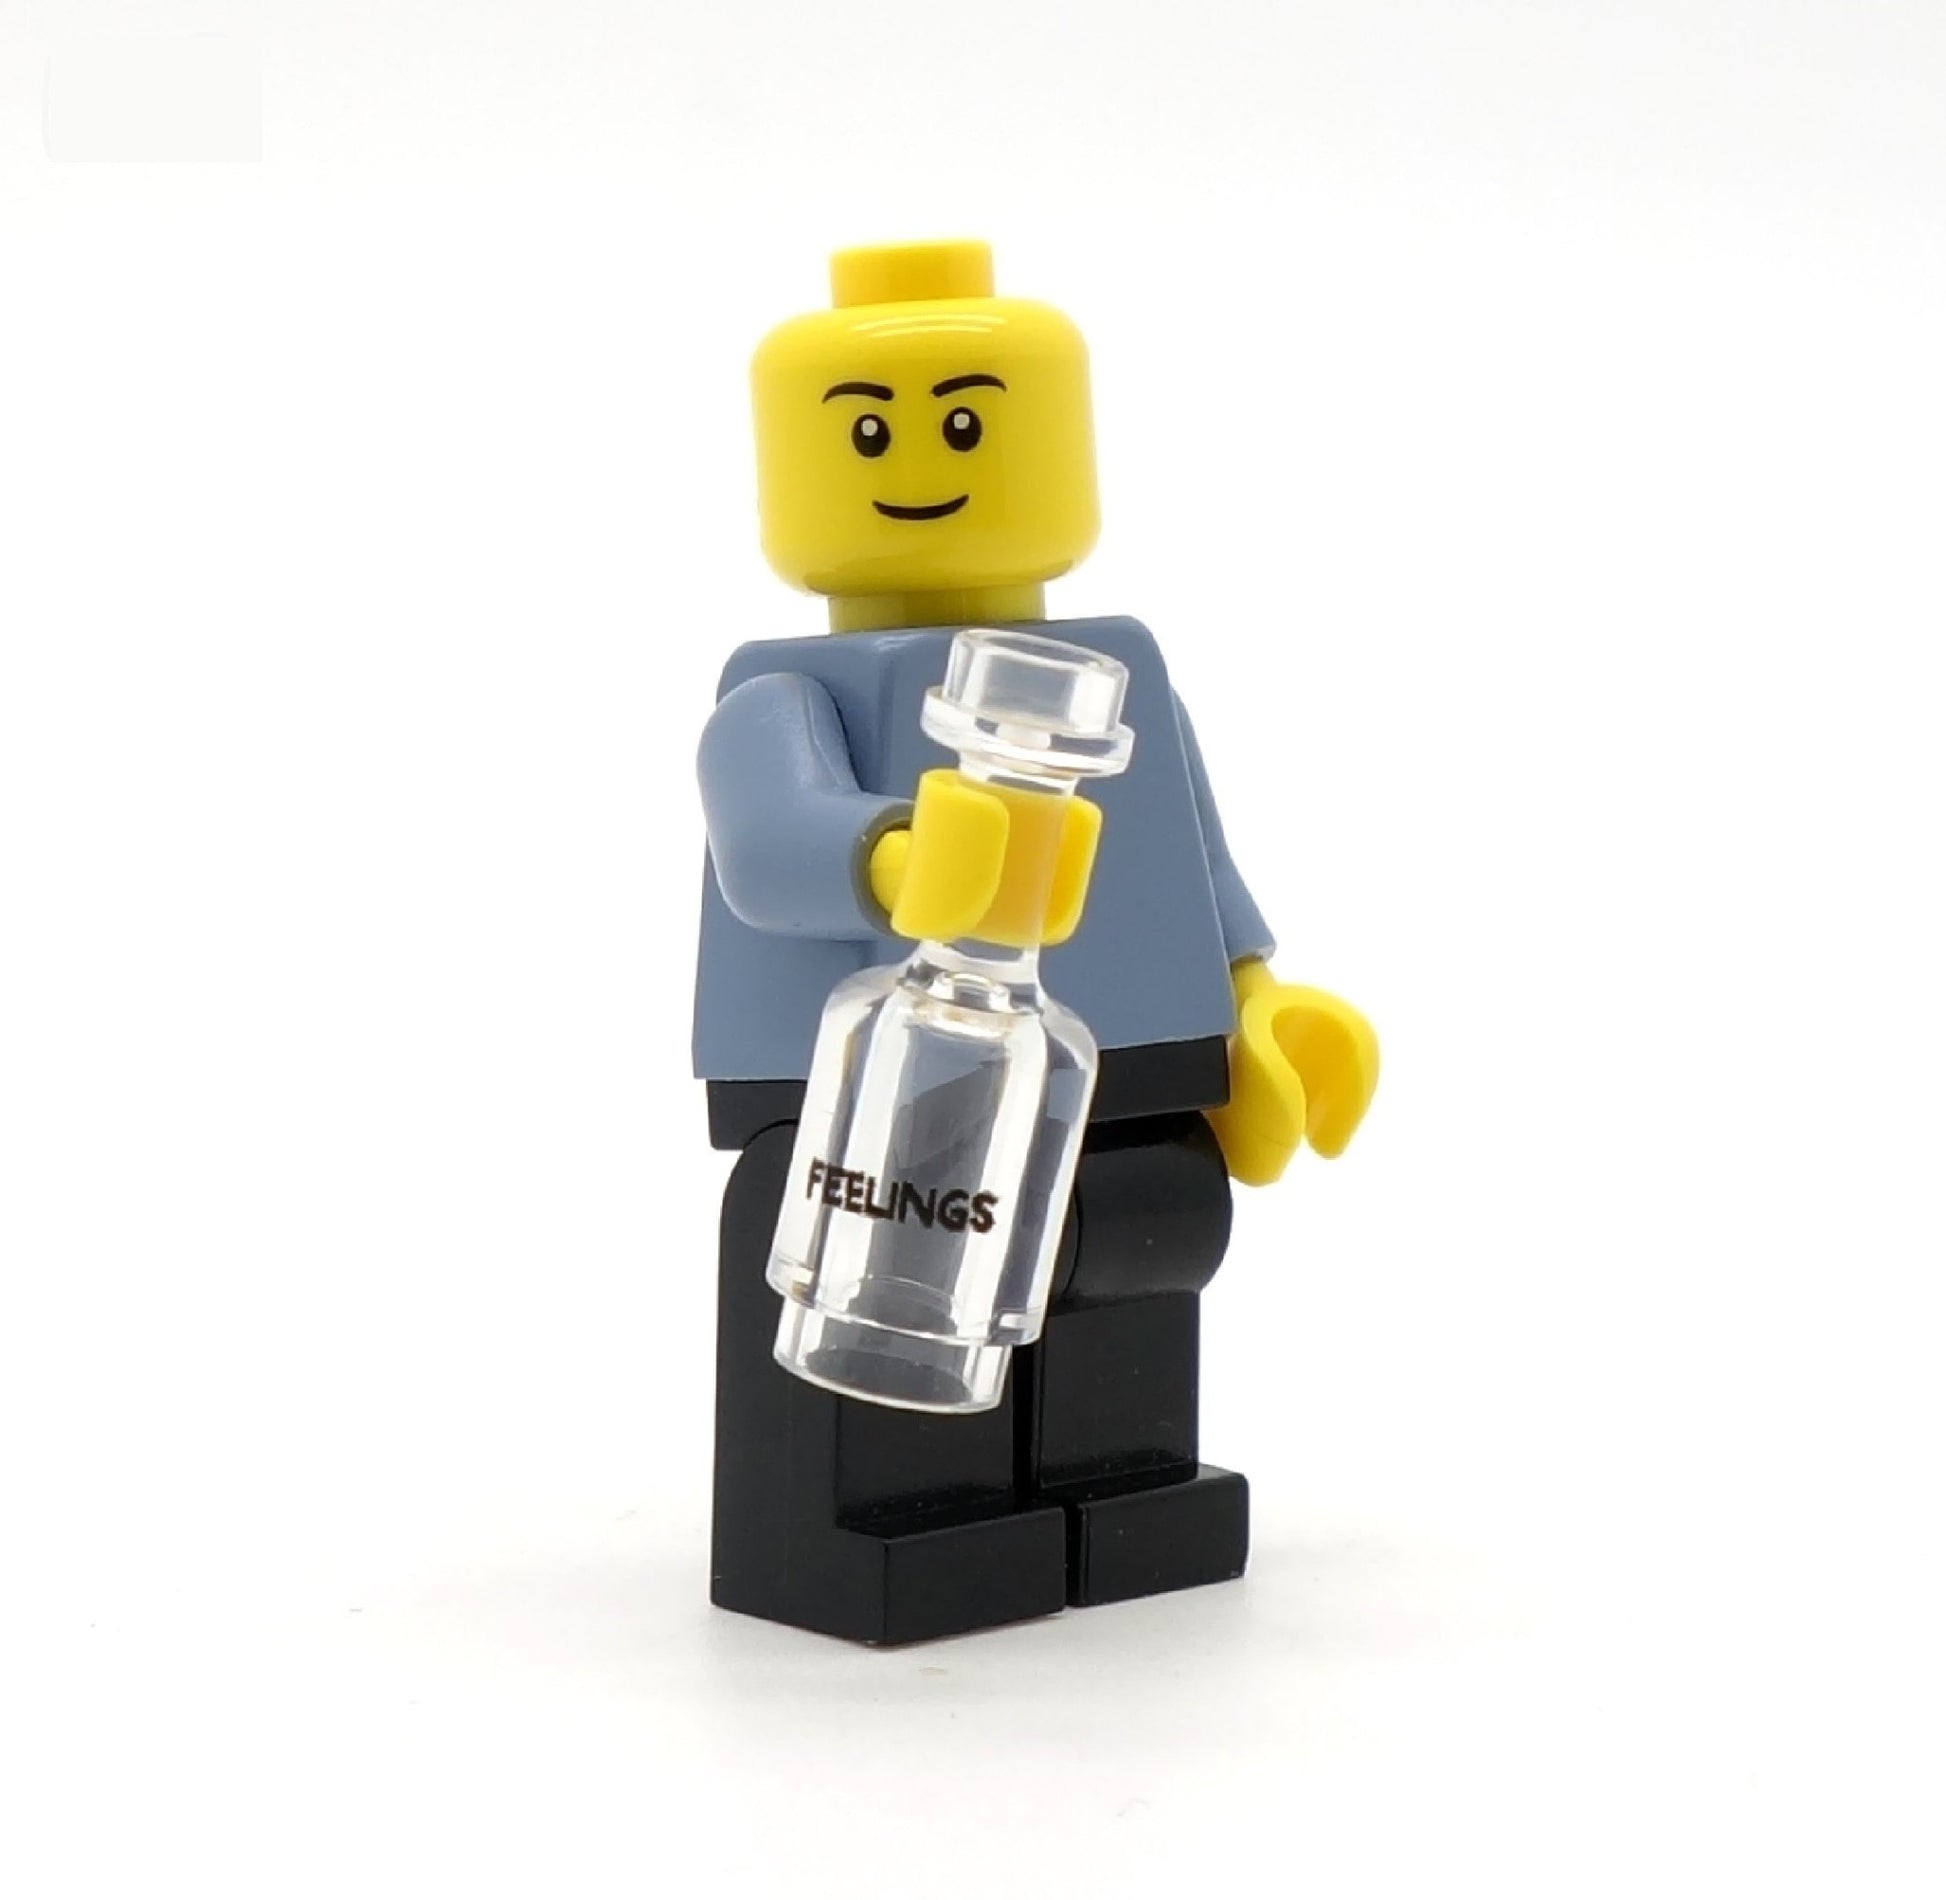 Bottle of Feelings - Custom Printed LEGO Bottle